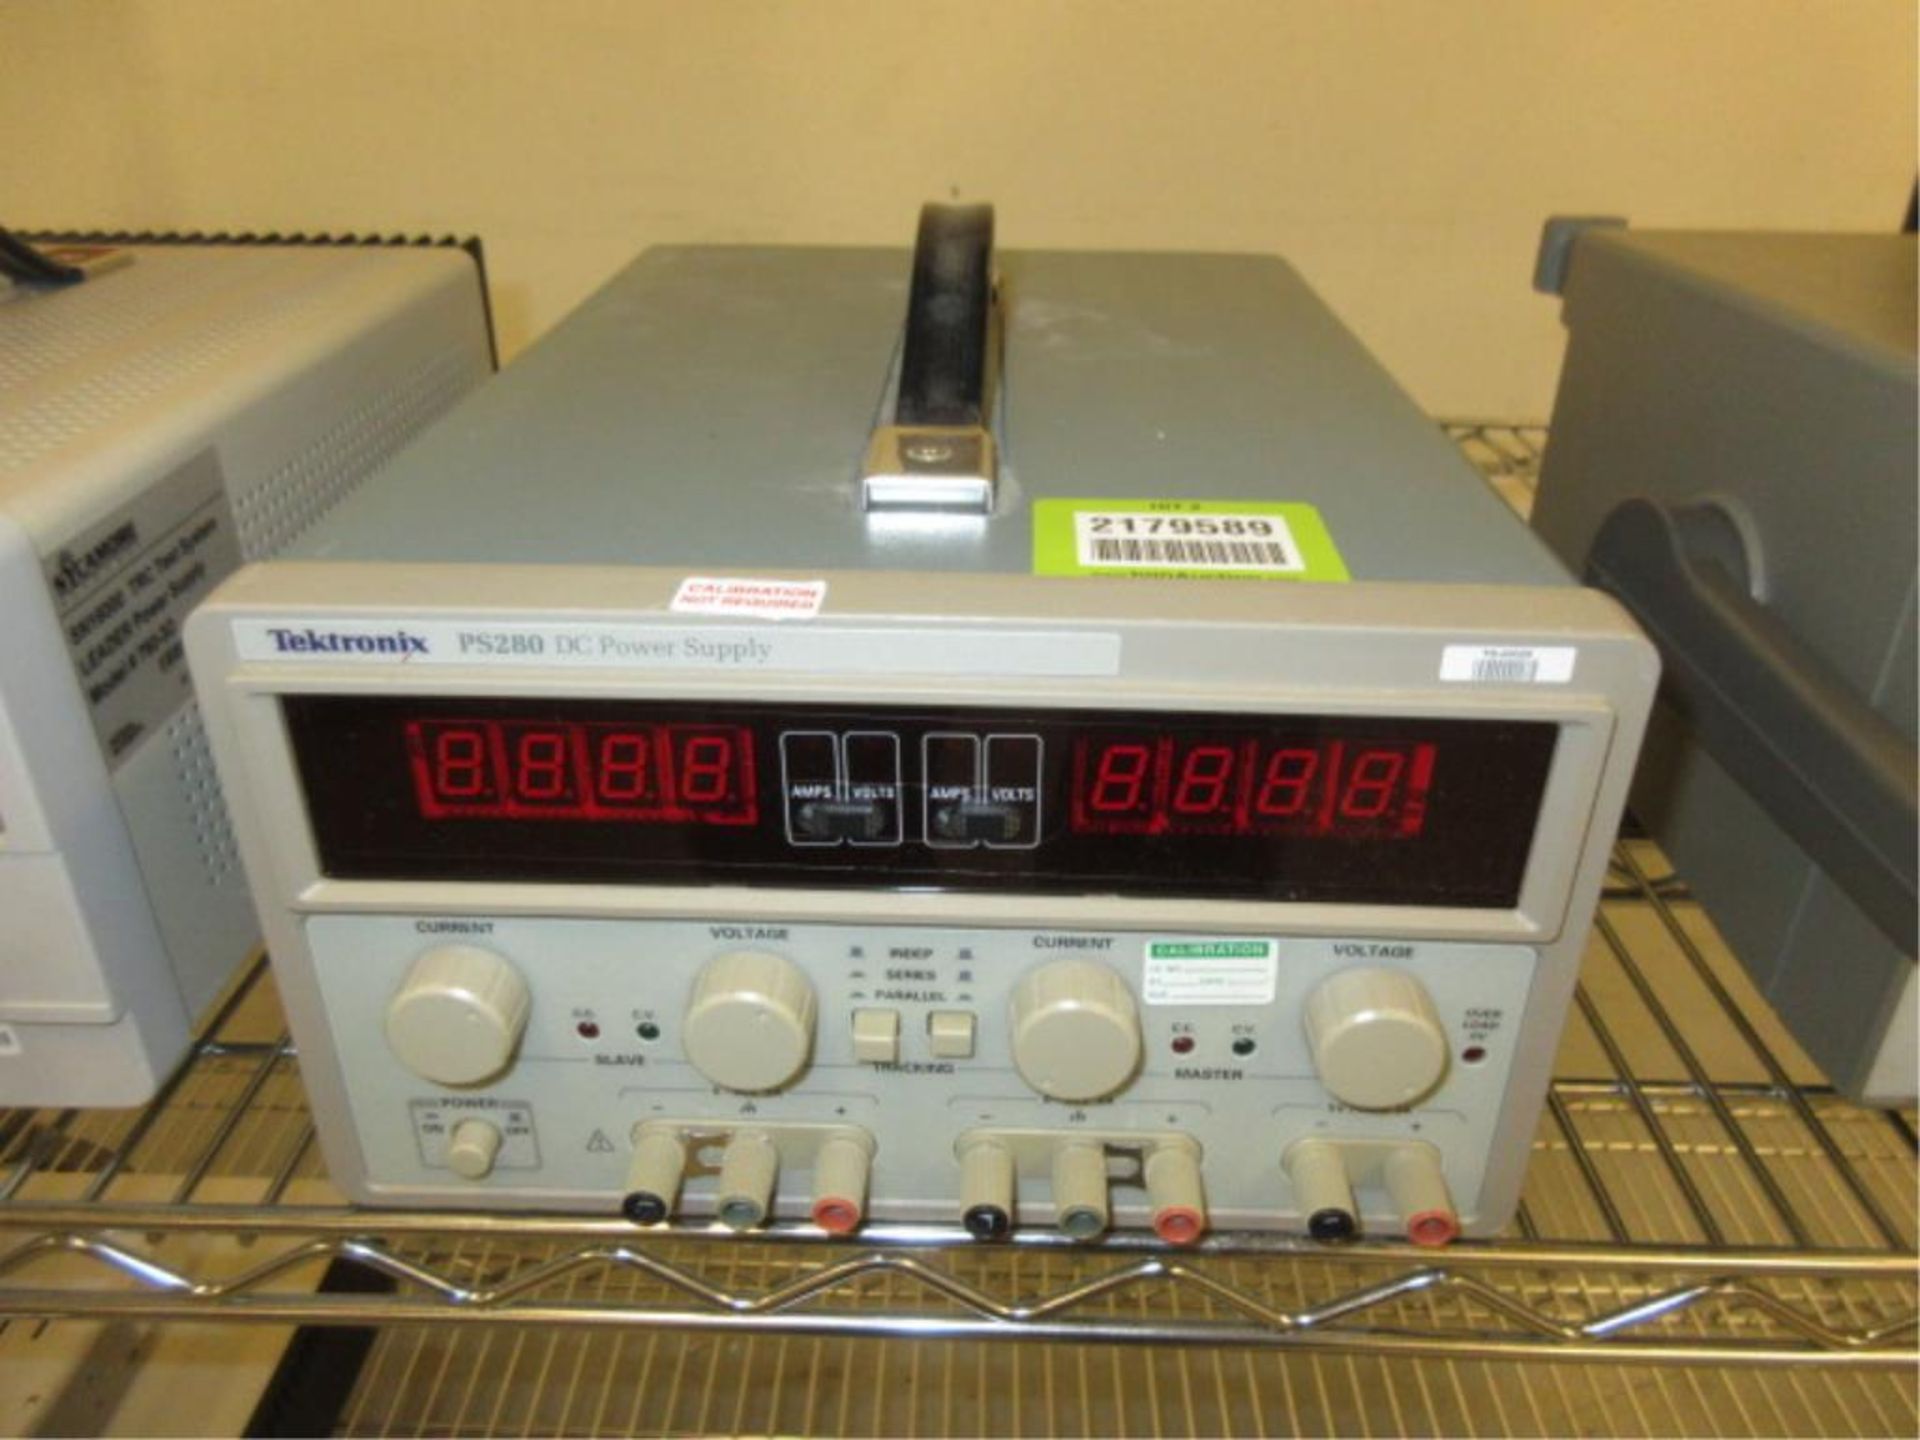 Tektronix PS 280 DC Power Supply. DC Power Supply, 0-30v, 100-240v. SN# TW61996. Asset# TO-00026.